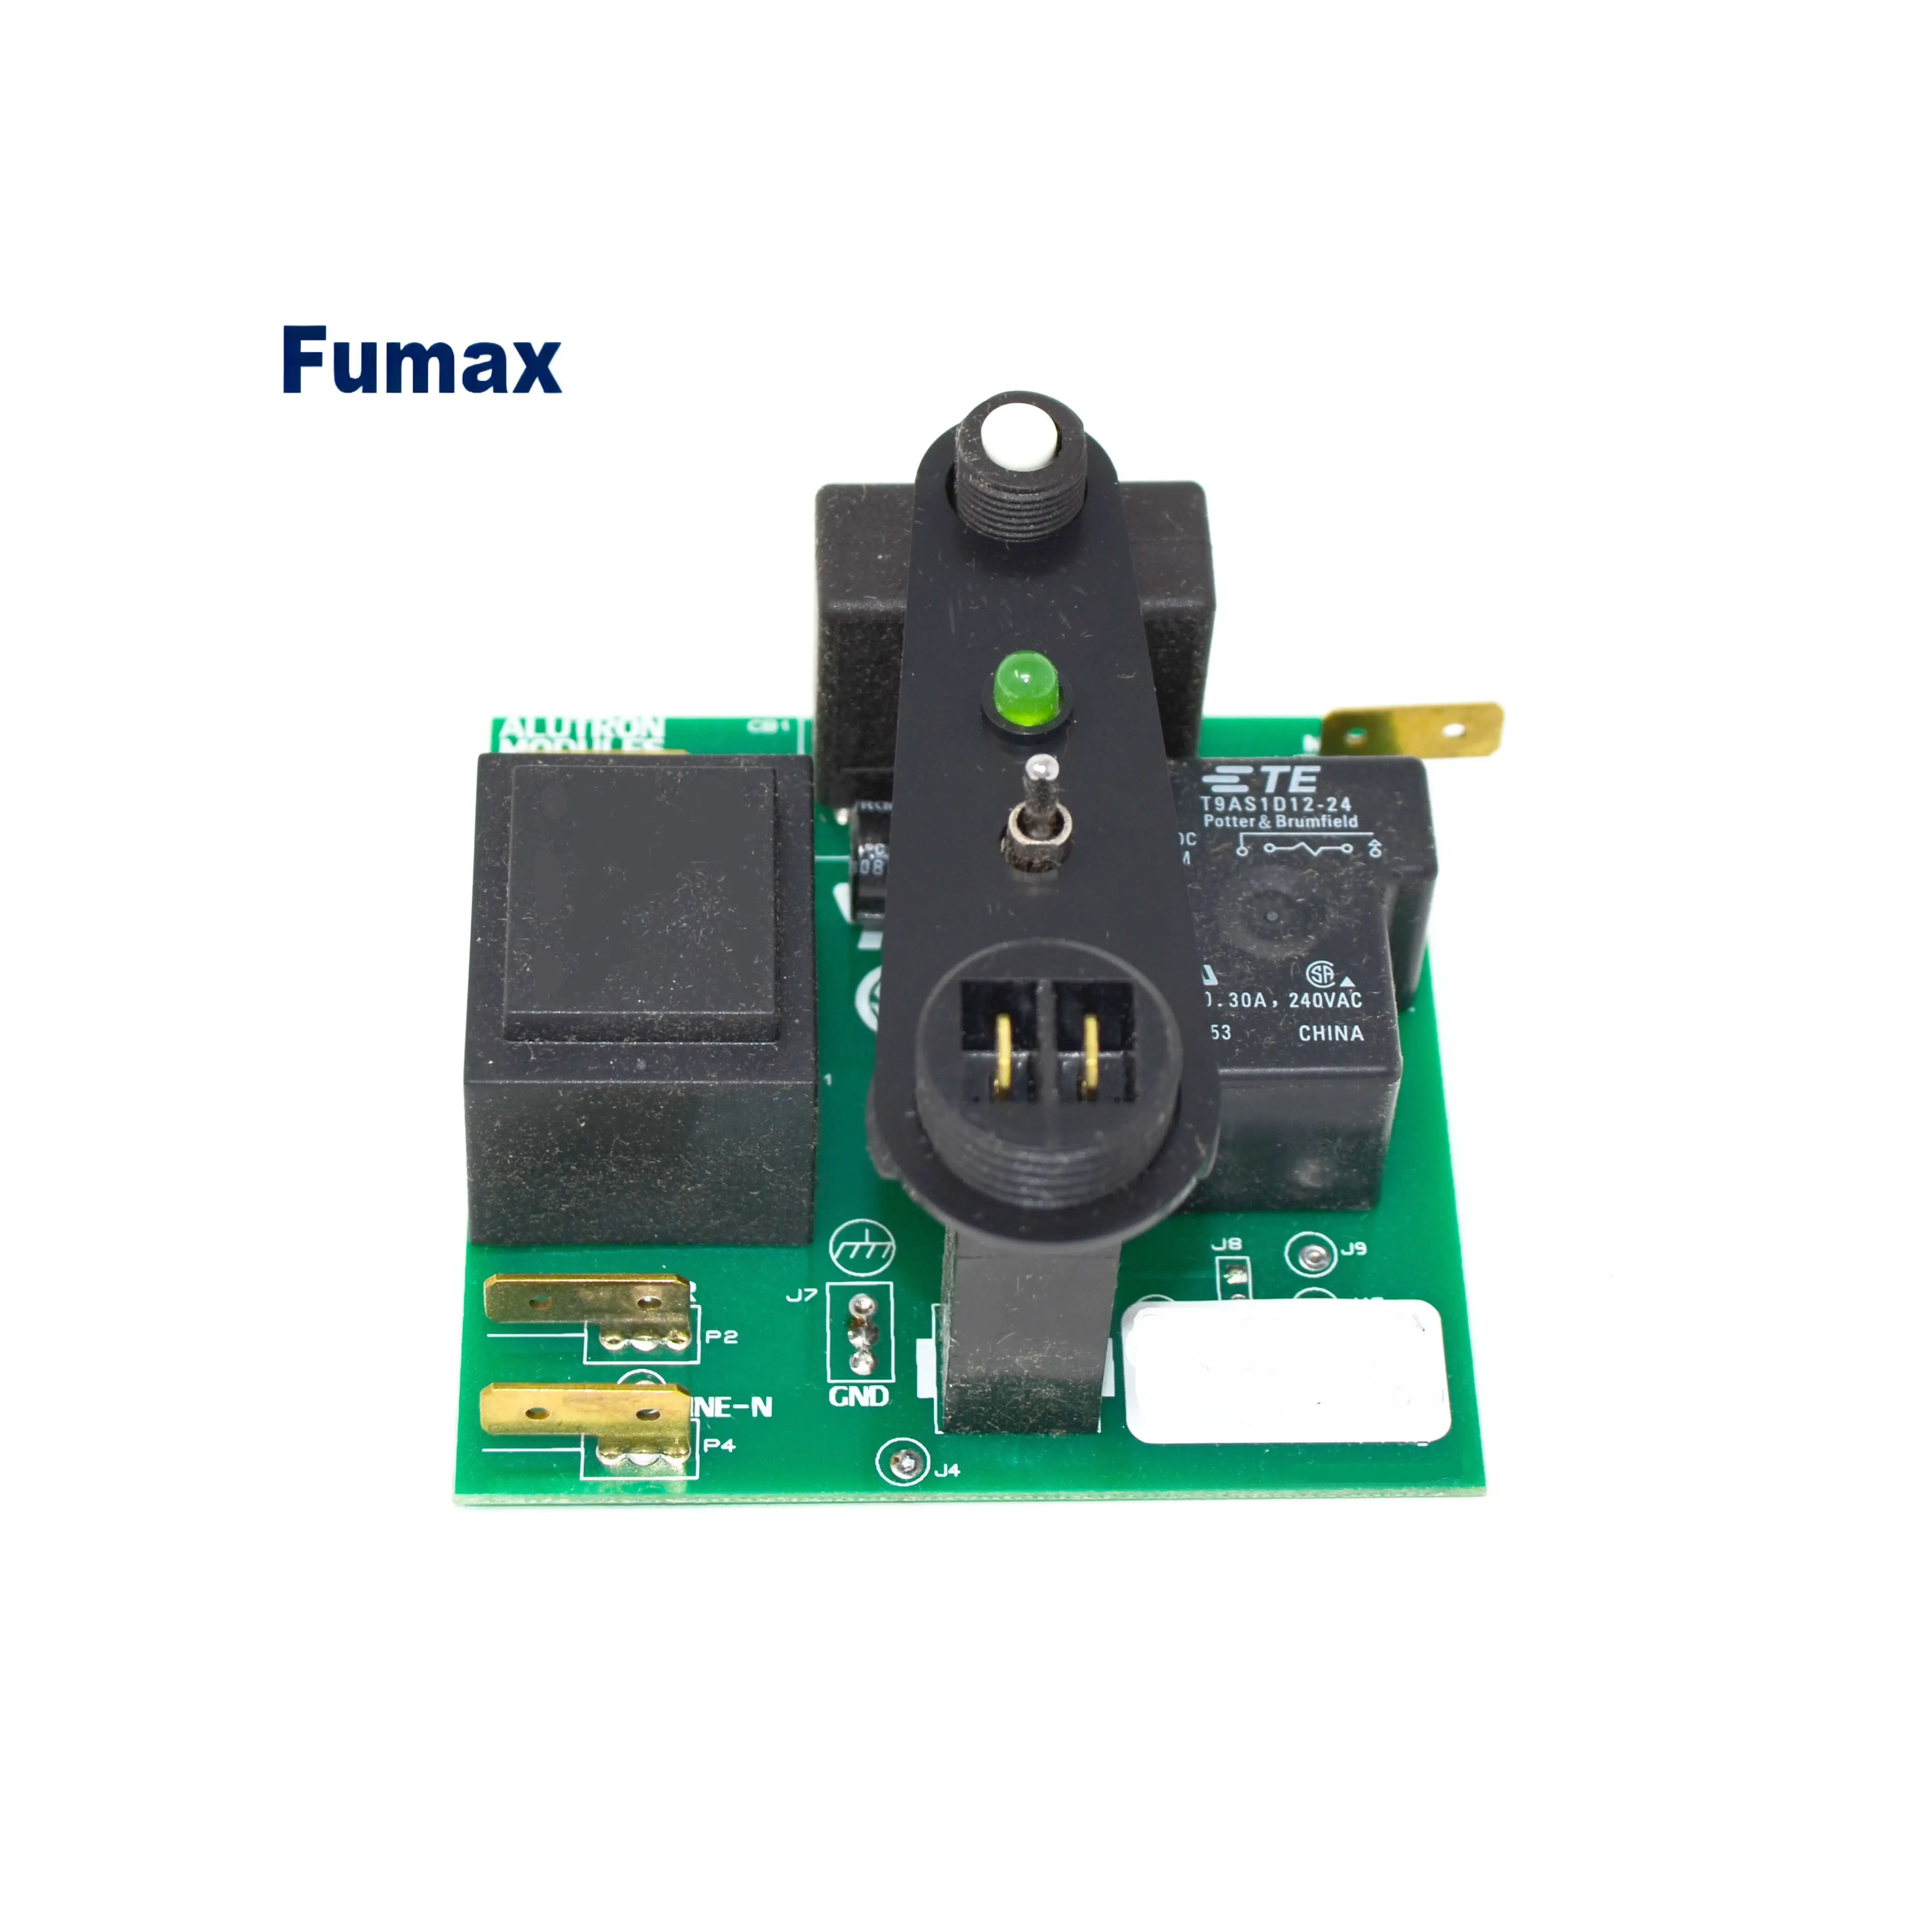 Fumax multicouche cctv personnalisé pcb oem fabricant de carte personnalisée Circuit imprimé dispositif de fabrication de support OEM